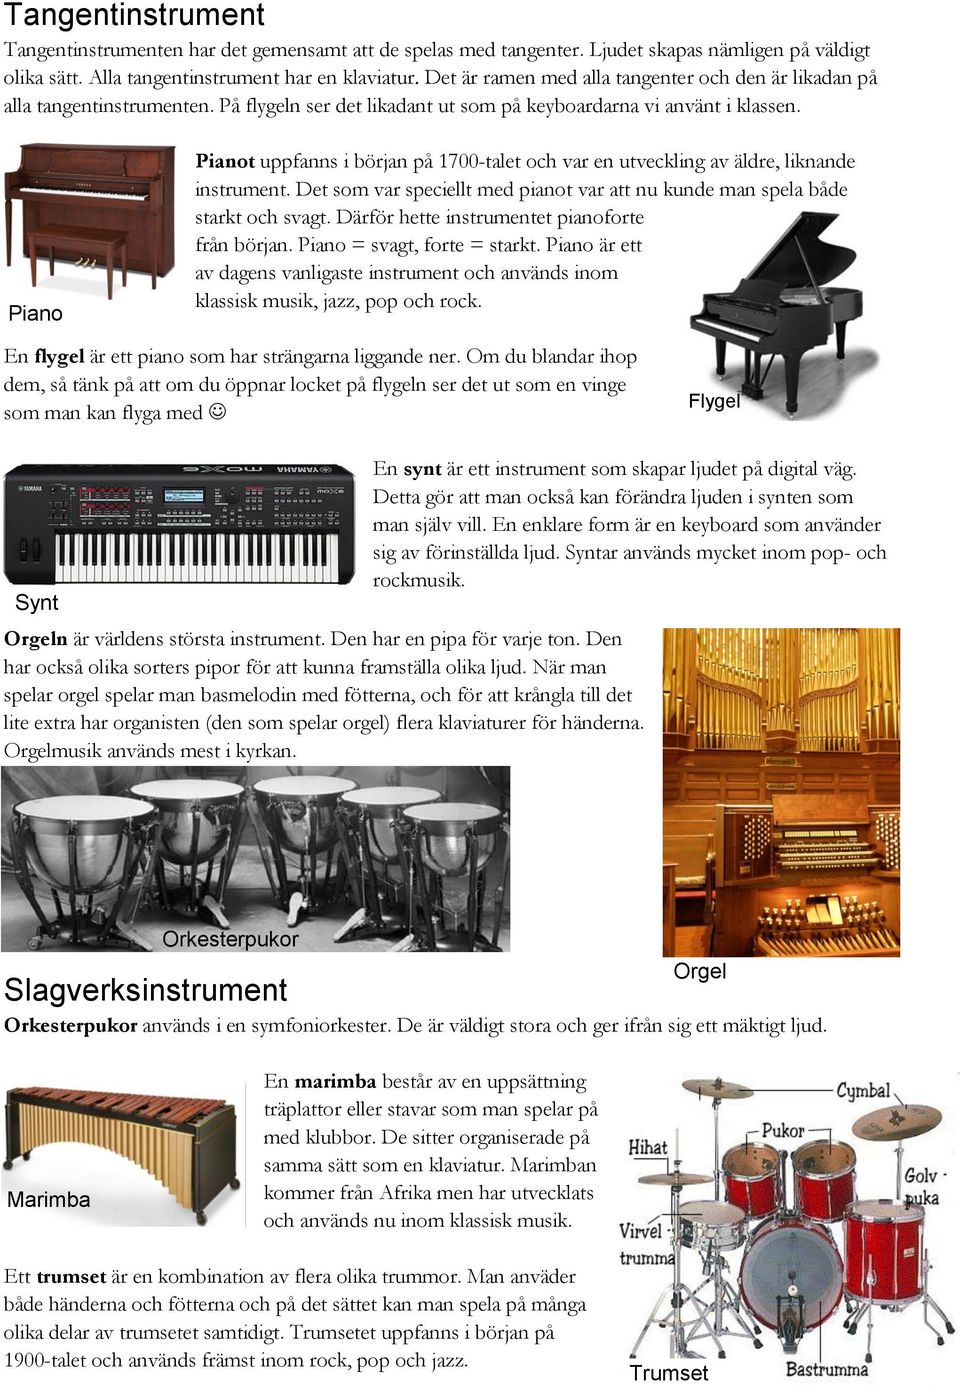 Piano Pianot uppfanns i början på 1700-talet och var en utveckling av äldre, liknande instrument. Det som var speciellt med pianot var att nu kunde man spela både starkt och svagt.